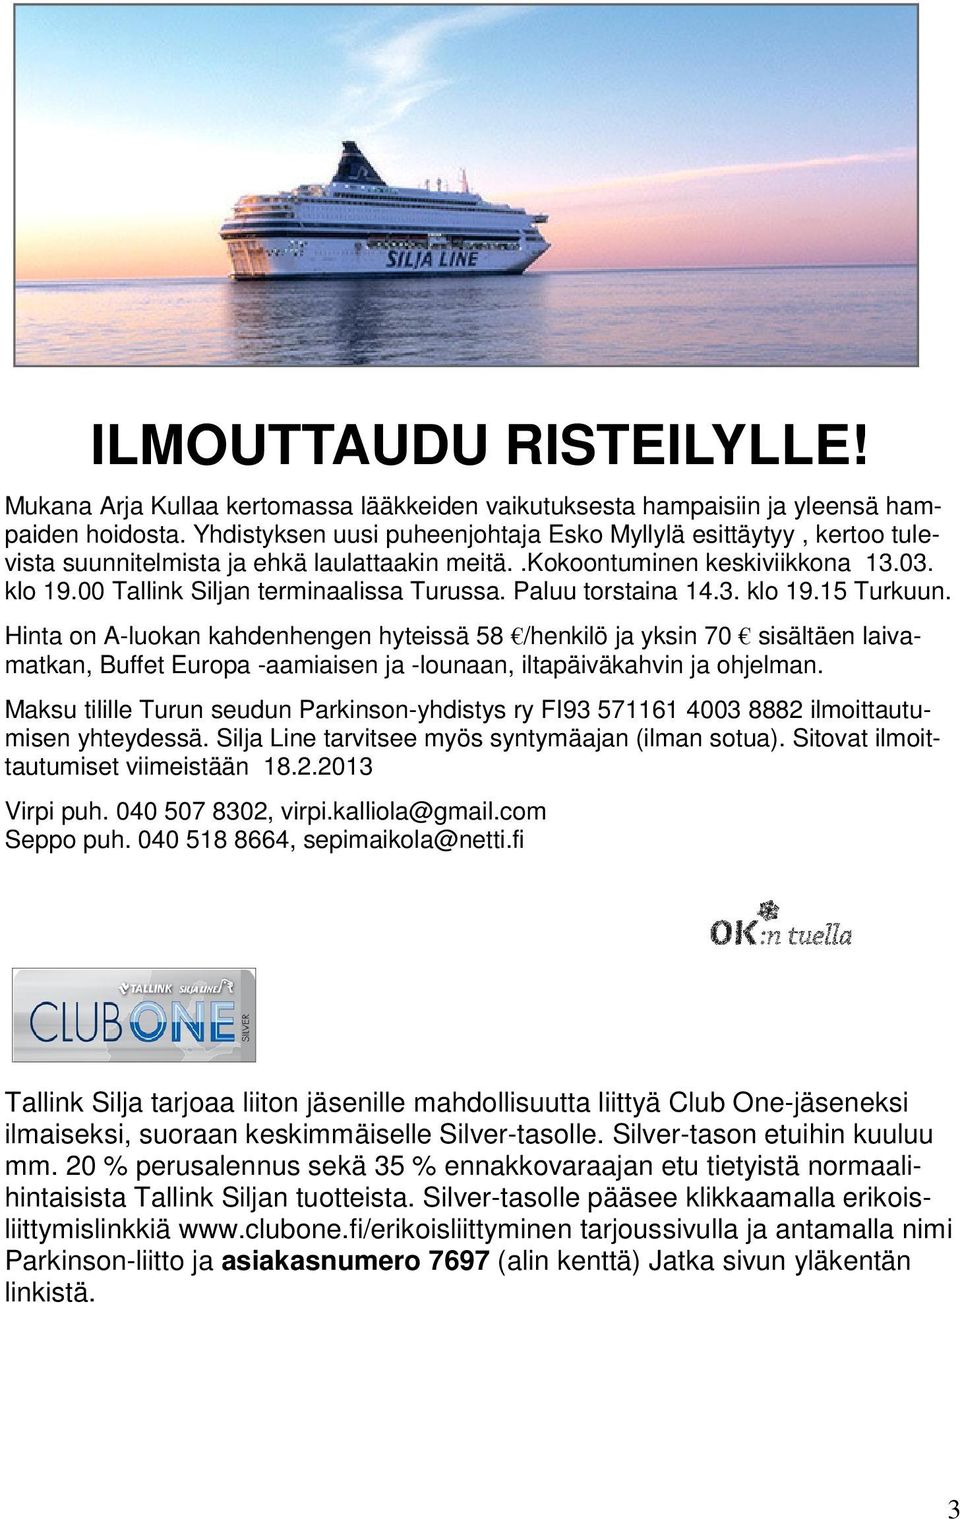 Paluu torstaina 14.3. klo 19.15 Turkuun. Hinta on A-luokan kahdenhengen hyteissä 58 /henkilö ja yksin 70 sisältäen laivamatkan, Buffet Europa -aamiaisen ja -lounaan, iltapäiväkahvin ja ohjelman.